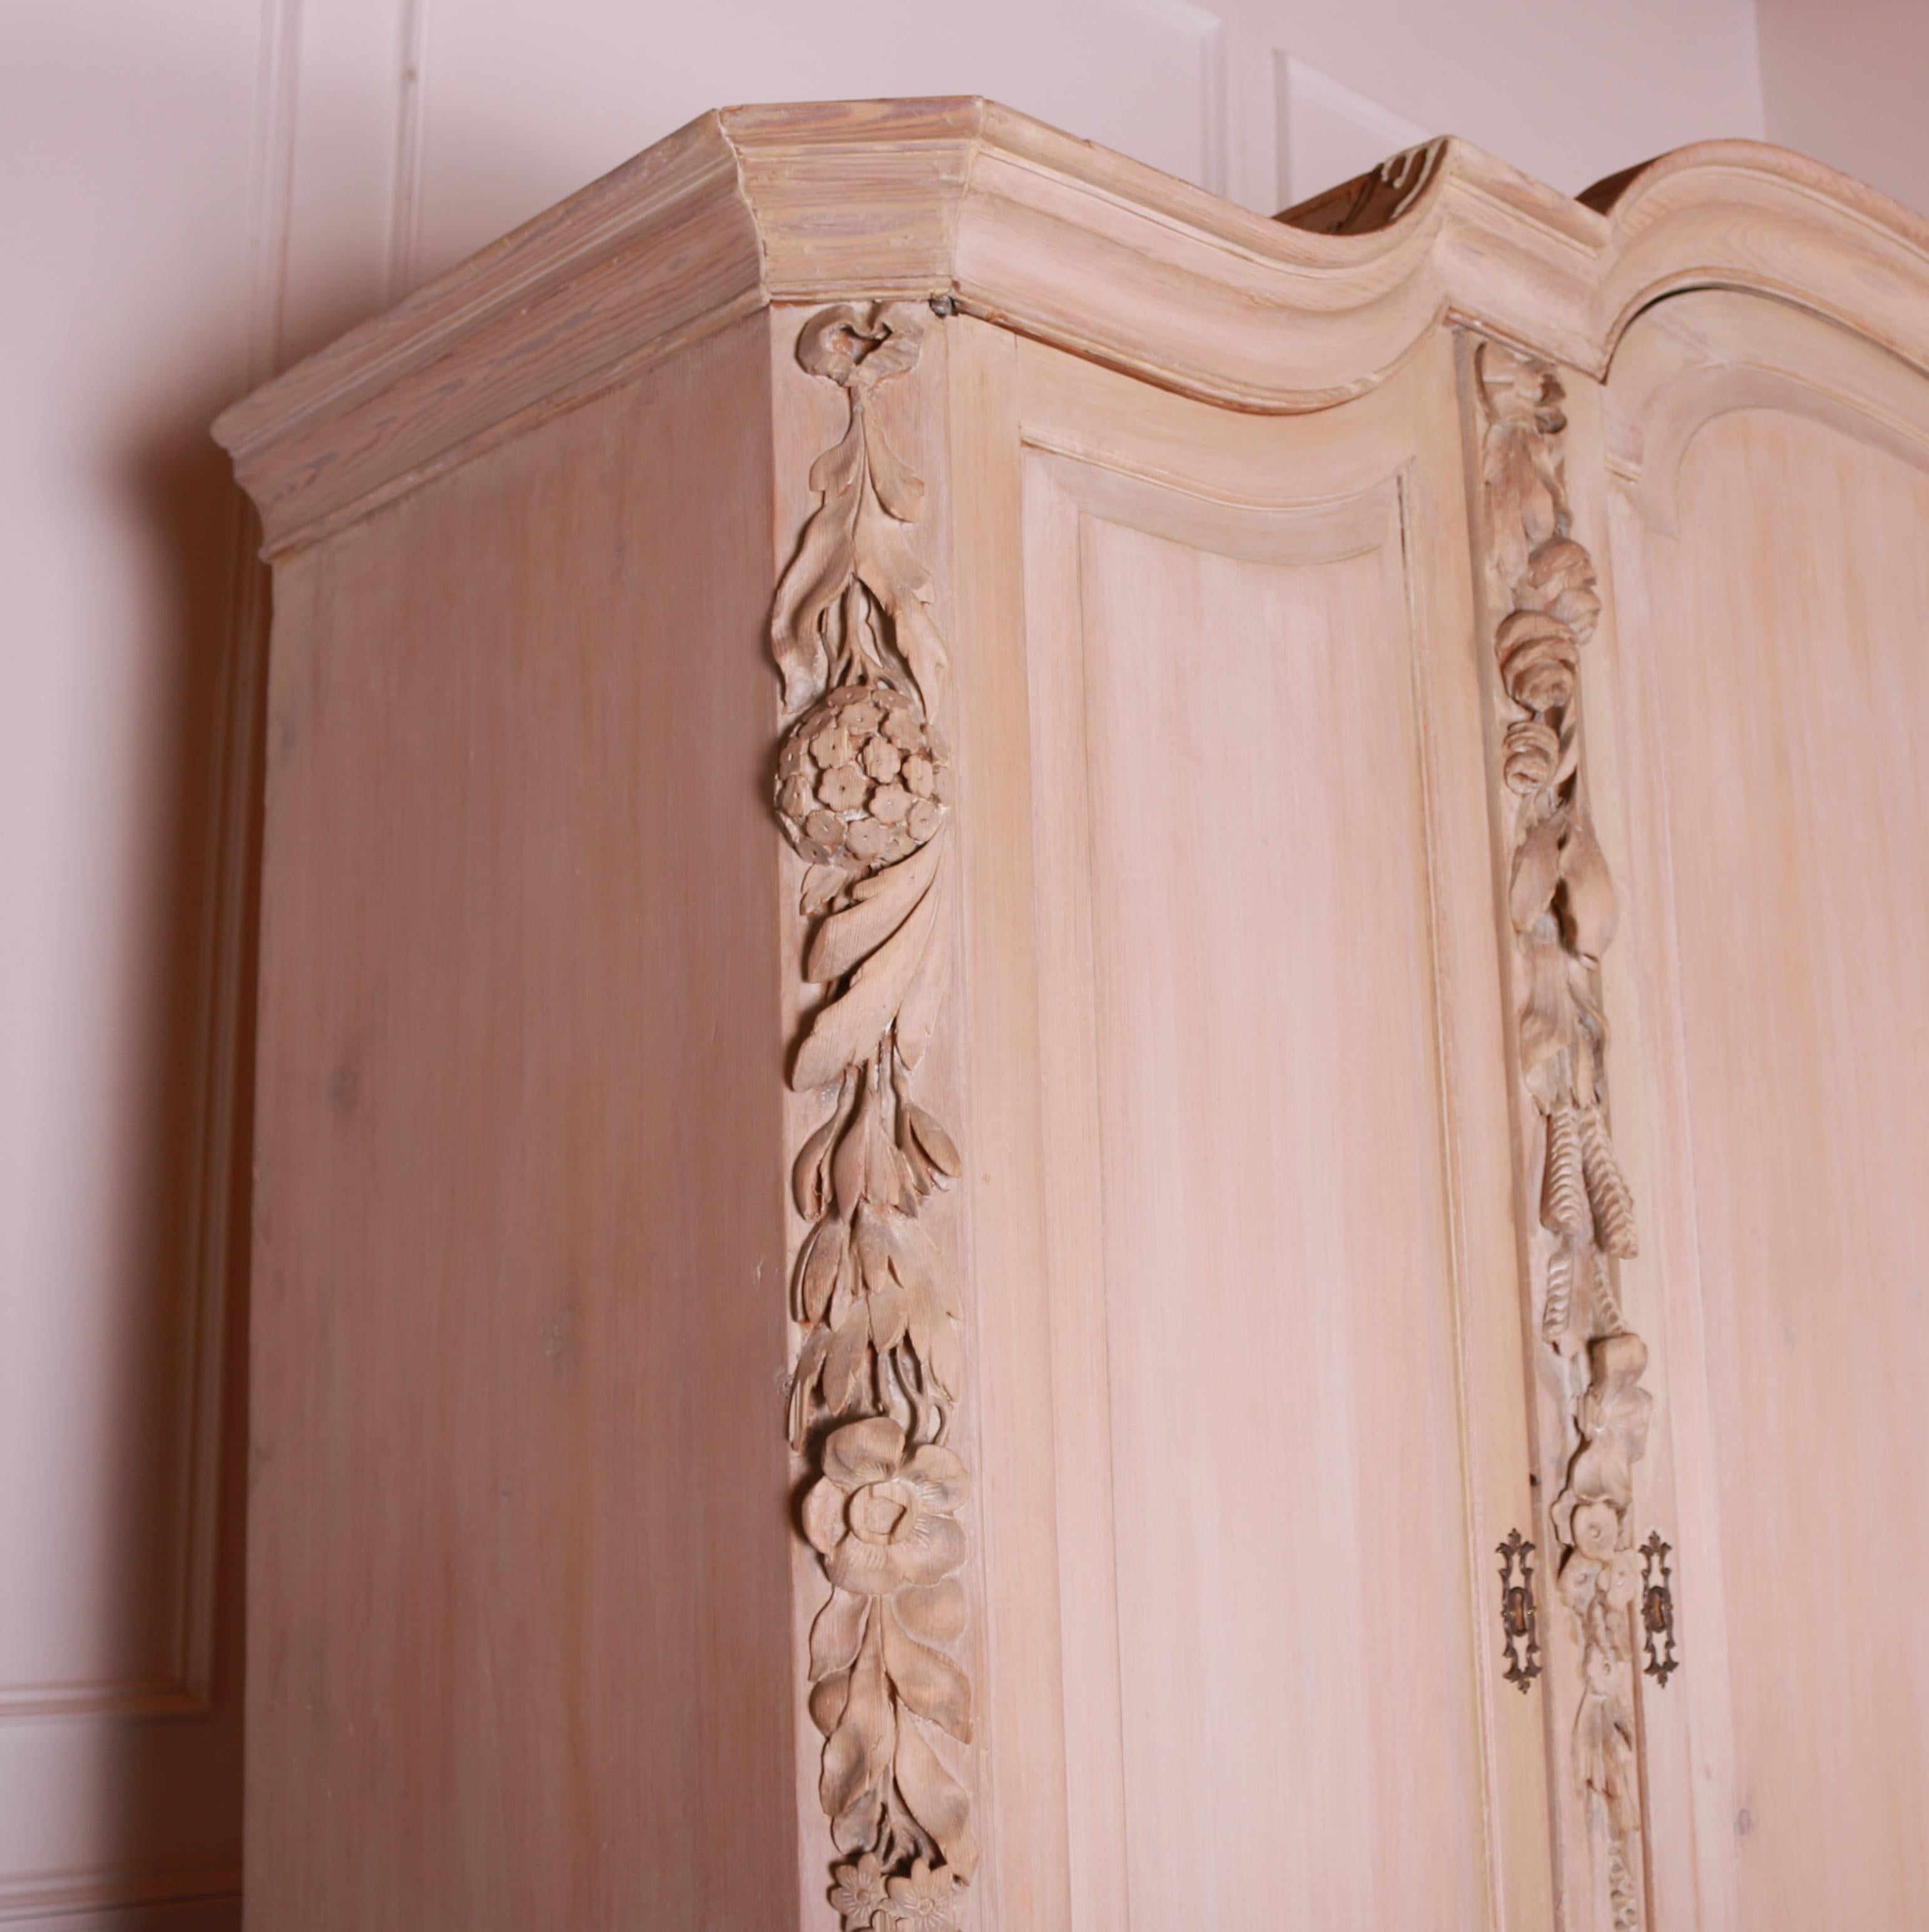 Insolite armoire à linge hollandaise en pin clair du 19ème C. 1860.

La profondeur interne de l'étagère est de 18 pouces (46 cm).



Dimensions
77.5 pouces (197 cms) de large
22 pouces (56 cms) de profondeur
91 pouces (231 cm) de haut.